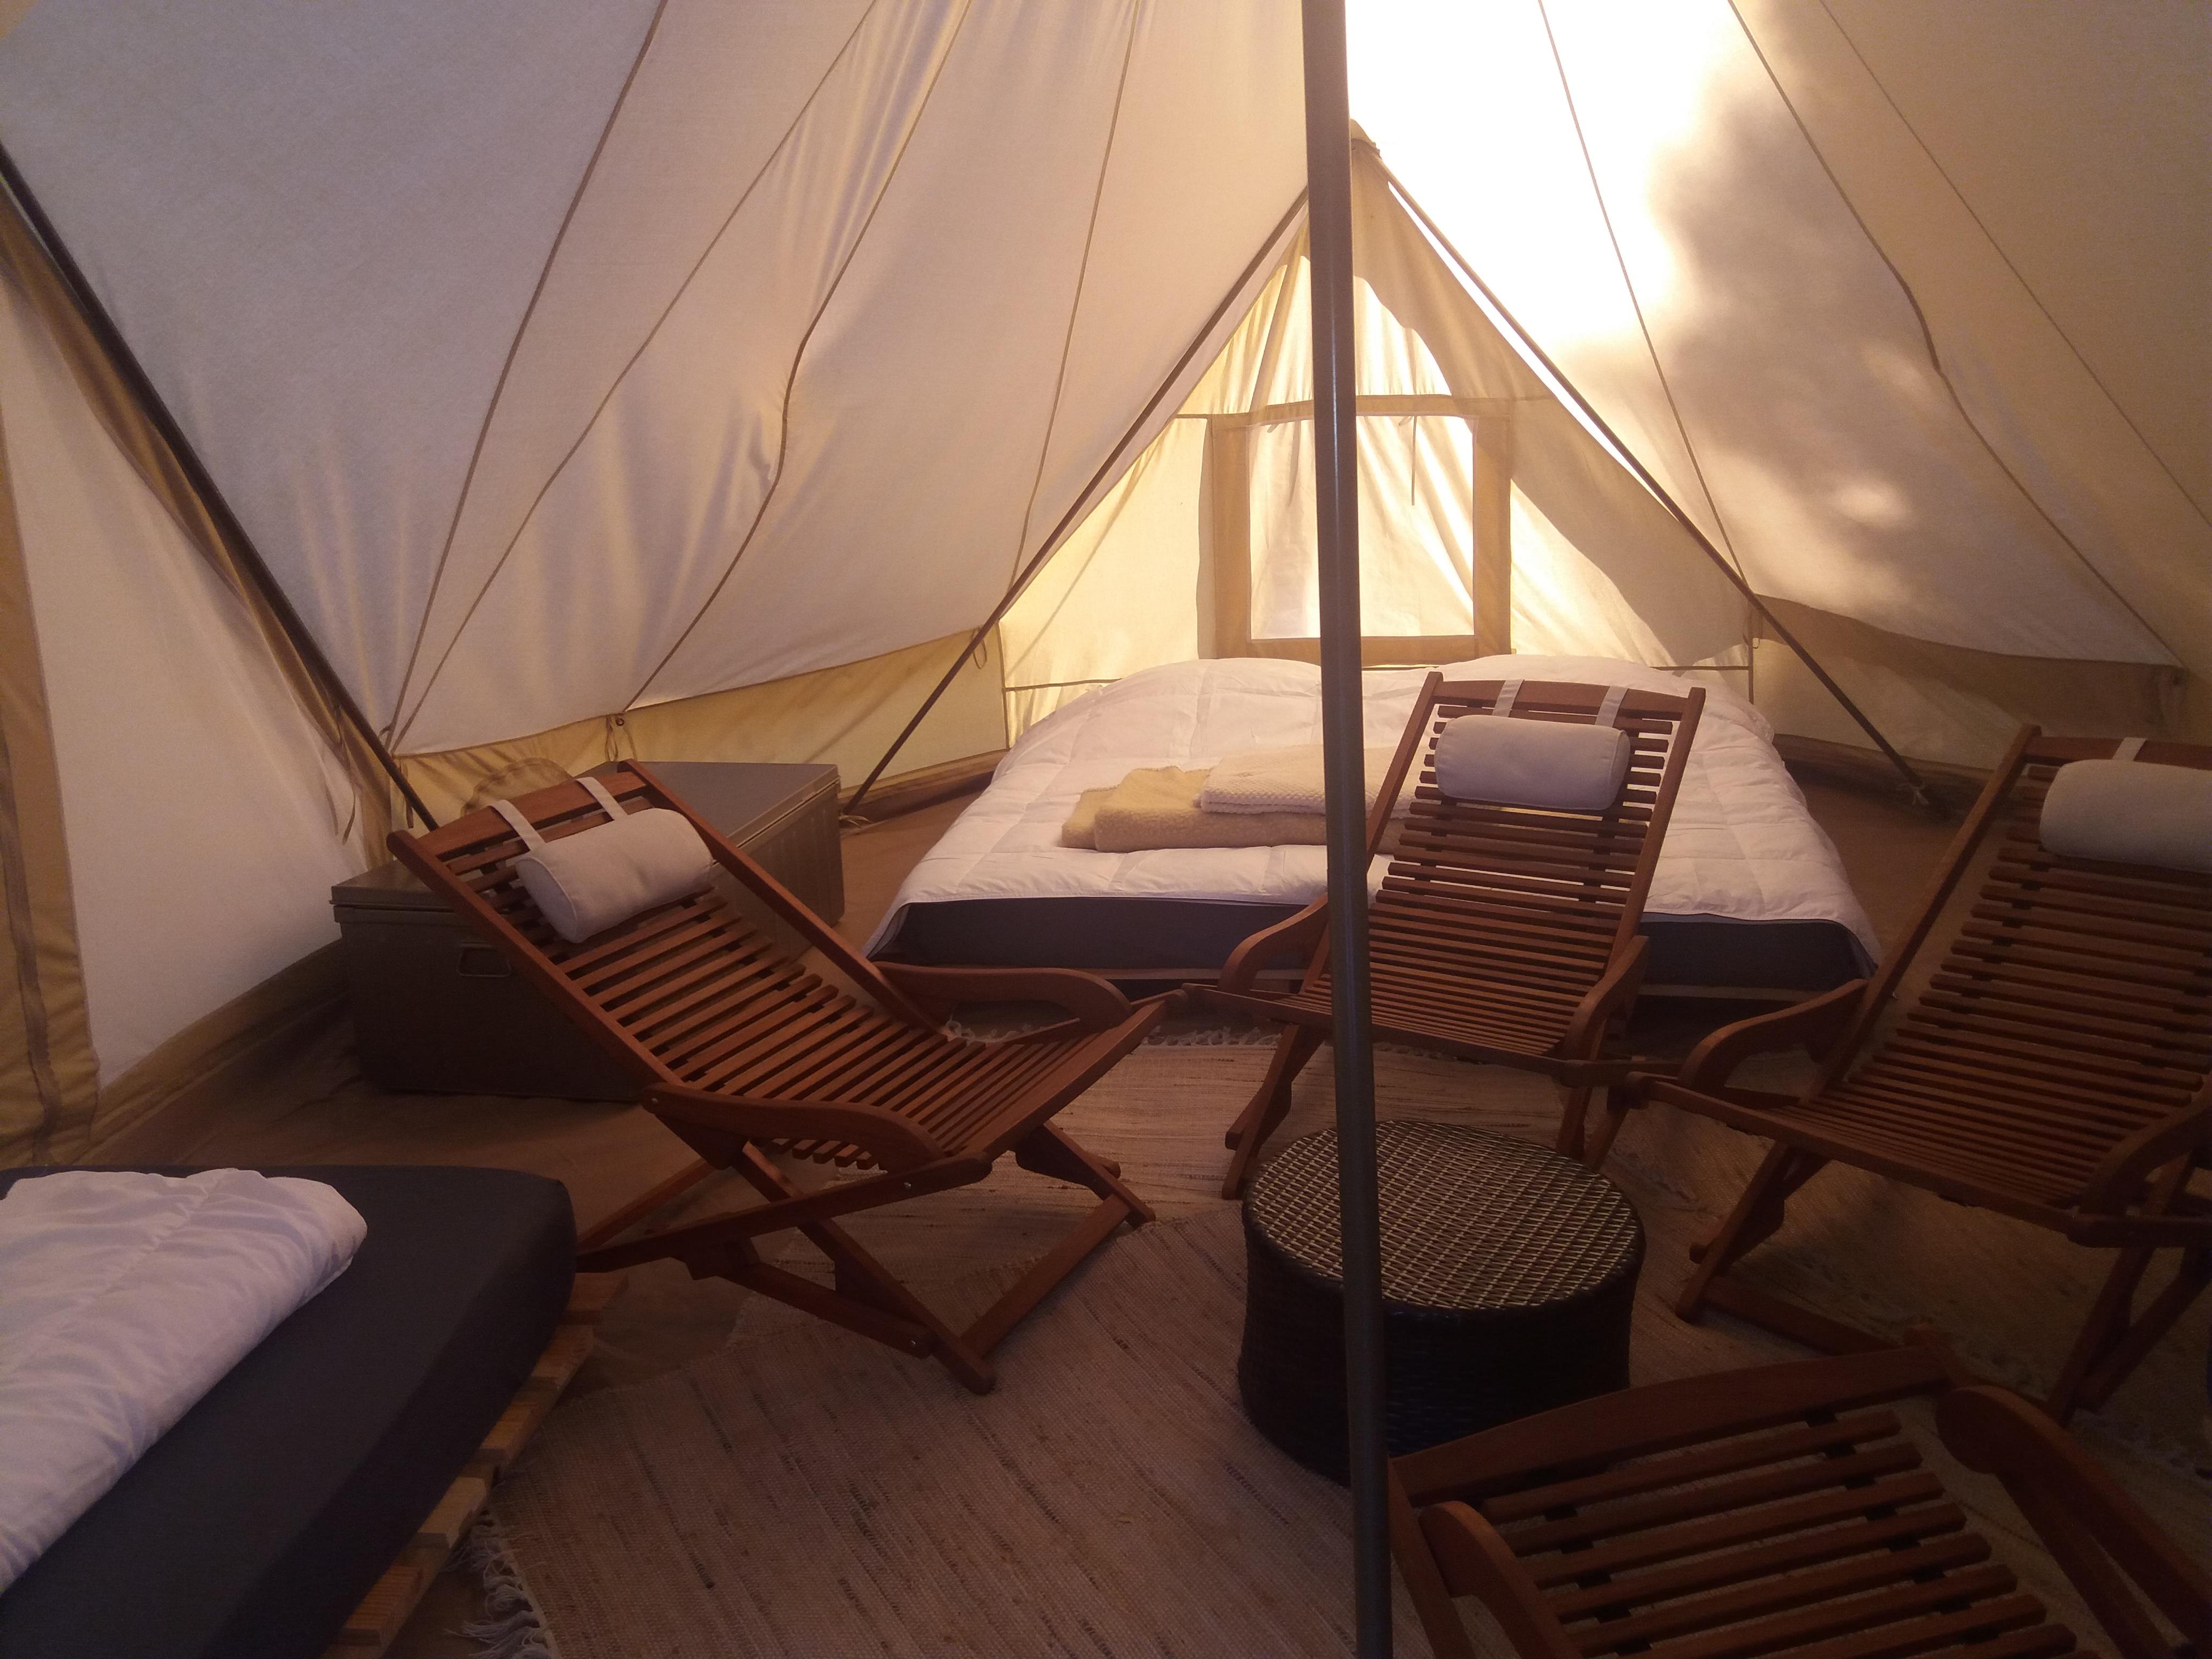 Accommodation - Tent - FERME DE SIMONDON : Camping & Gîtes & Chambres d'Hôtes